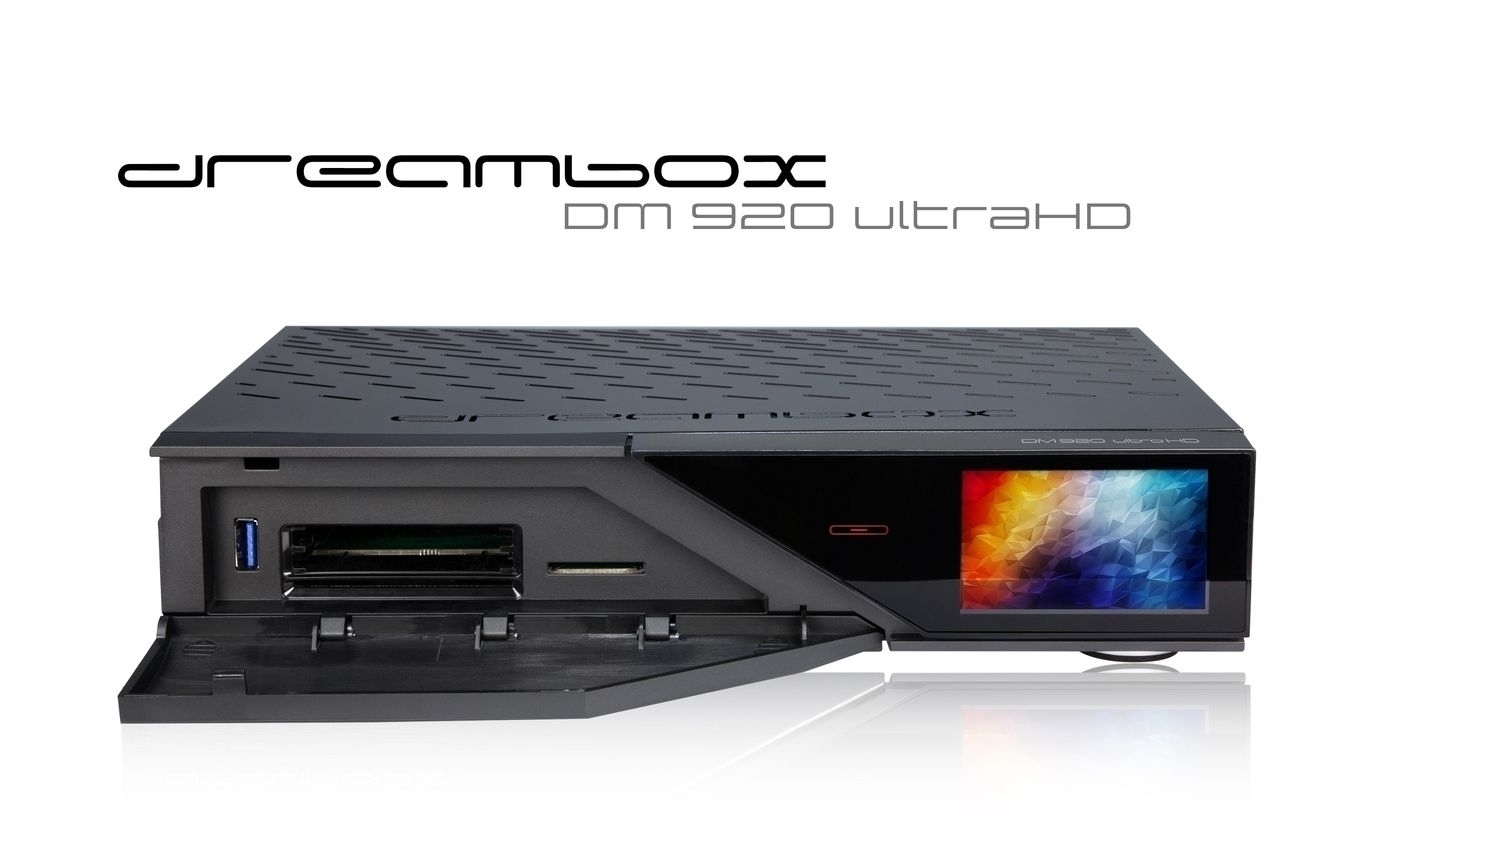 Dreambox DM920 UHD 4K 1x DVB-S2X-MS / 1x Triple S2X-MS Tuner E2 Linux PVR Receiver